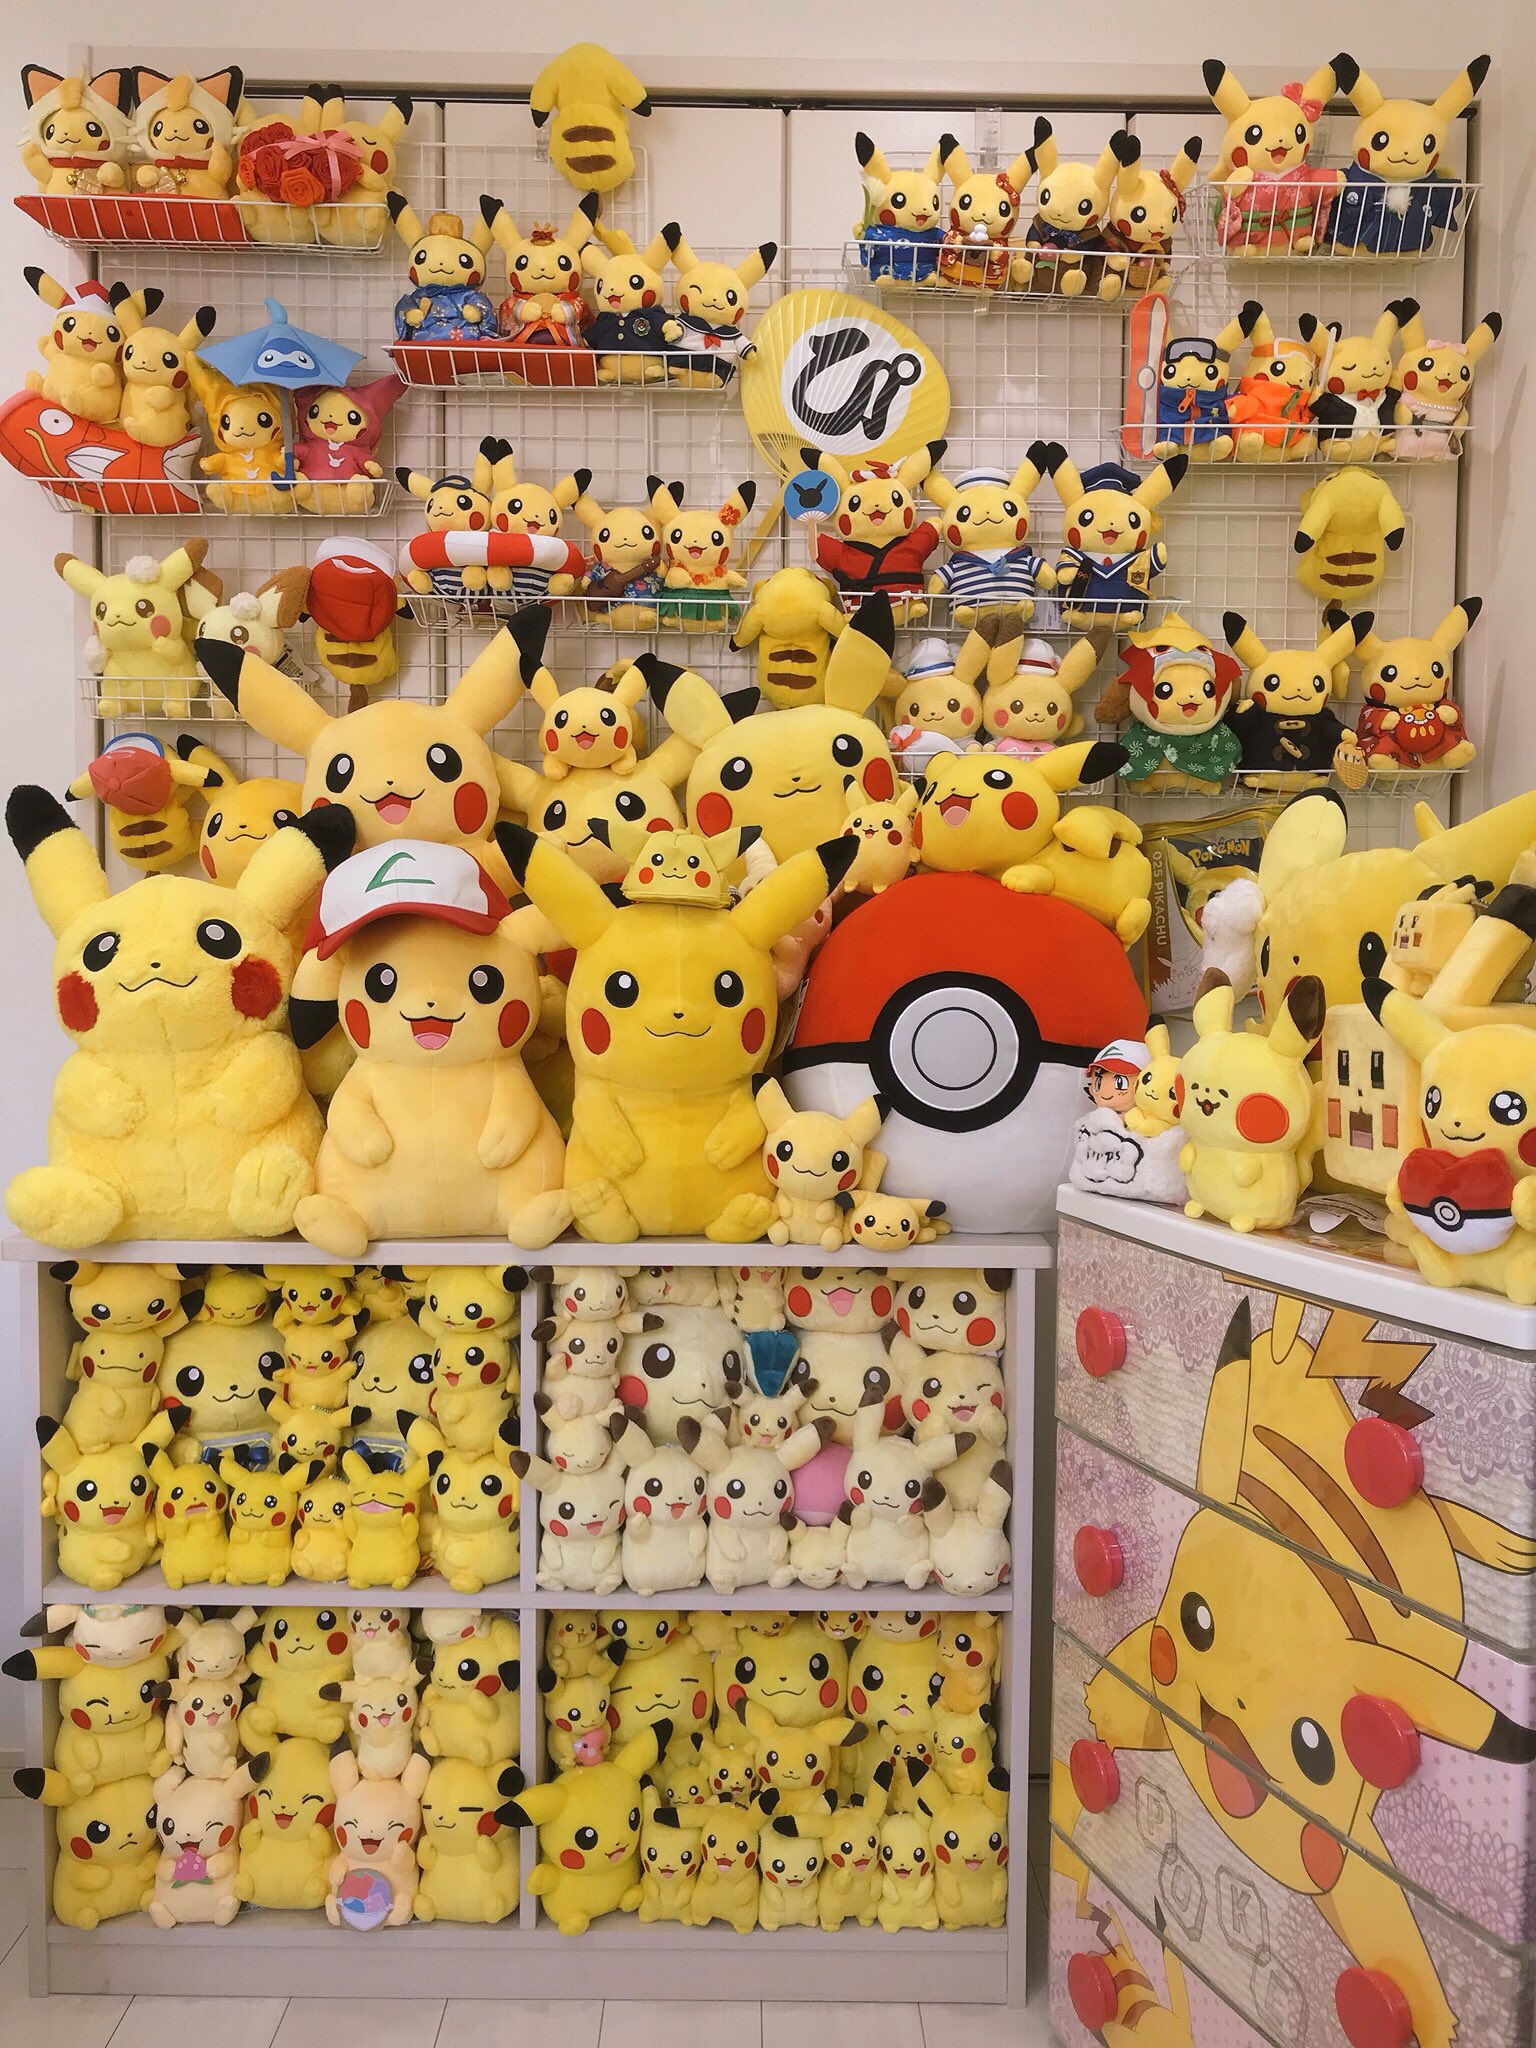 FOTO] Un fan ha la più gigantesca collezione di gadget e peluche di Pikachu!  – Pokémon Times, cattura tutte le novità!